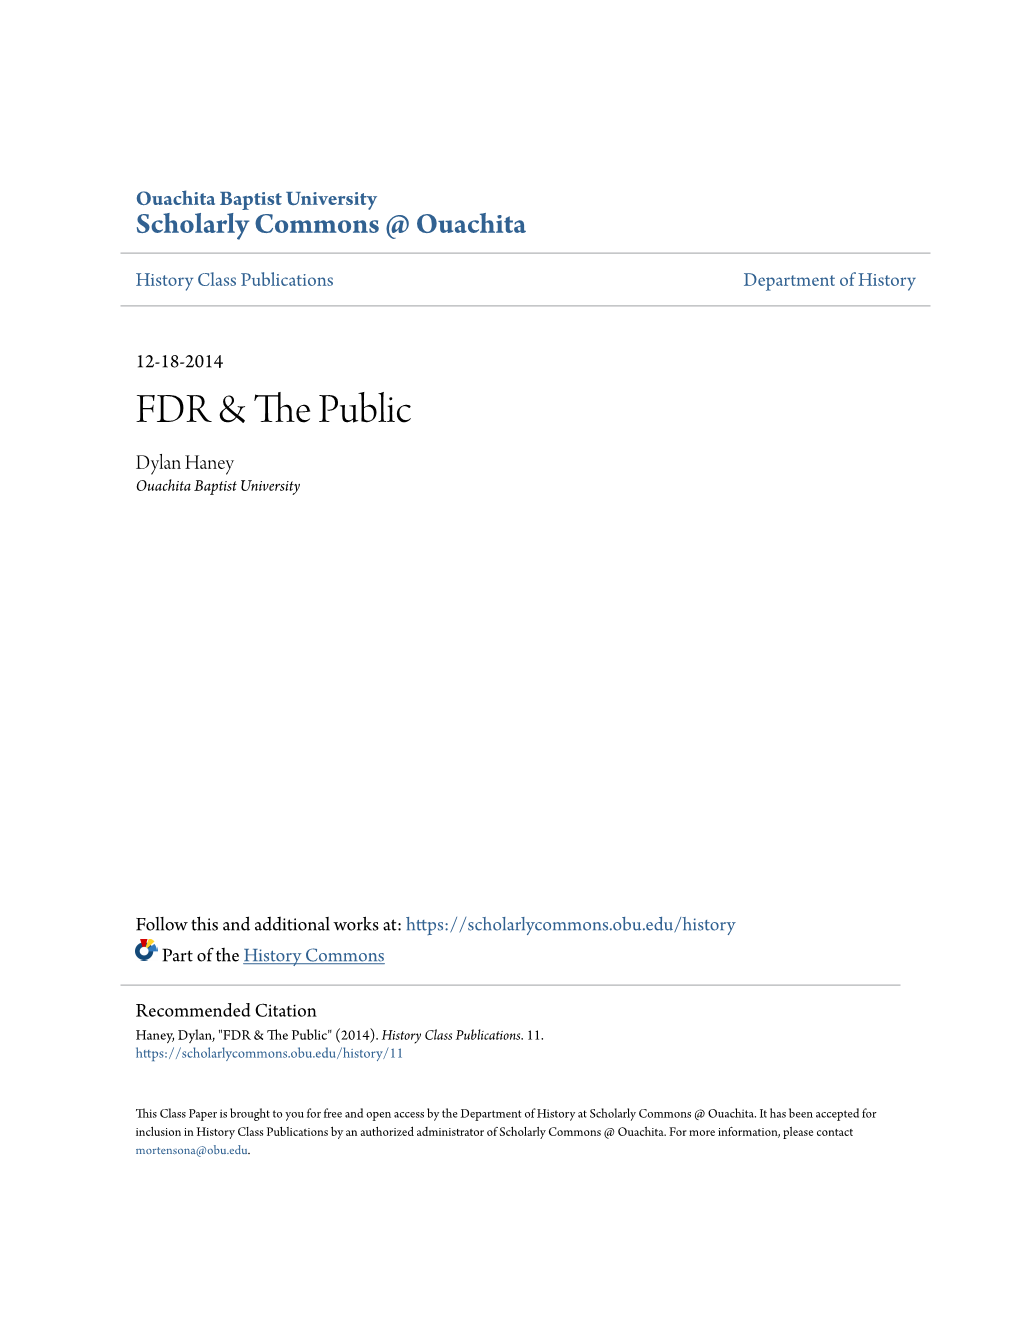 FDR & the Public